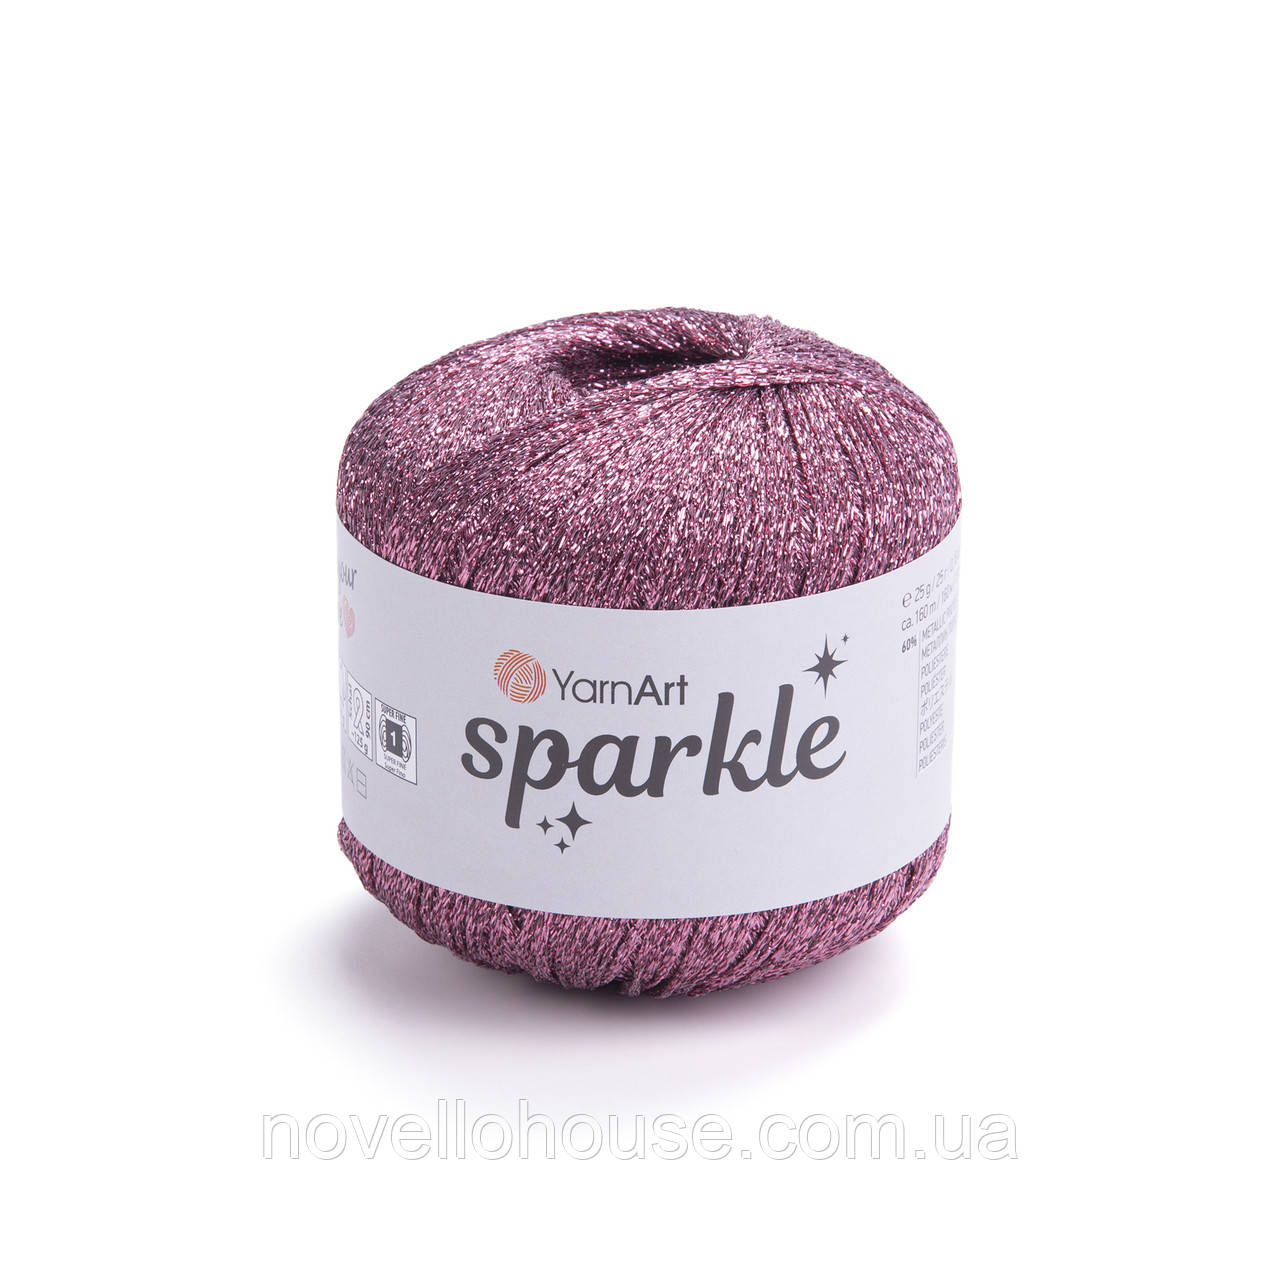 YarnArt SPARKLE (Спаркл) №1336 рожевий (Пряжа металізований поліестер, нитки для в'язання)